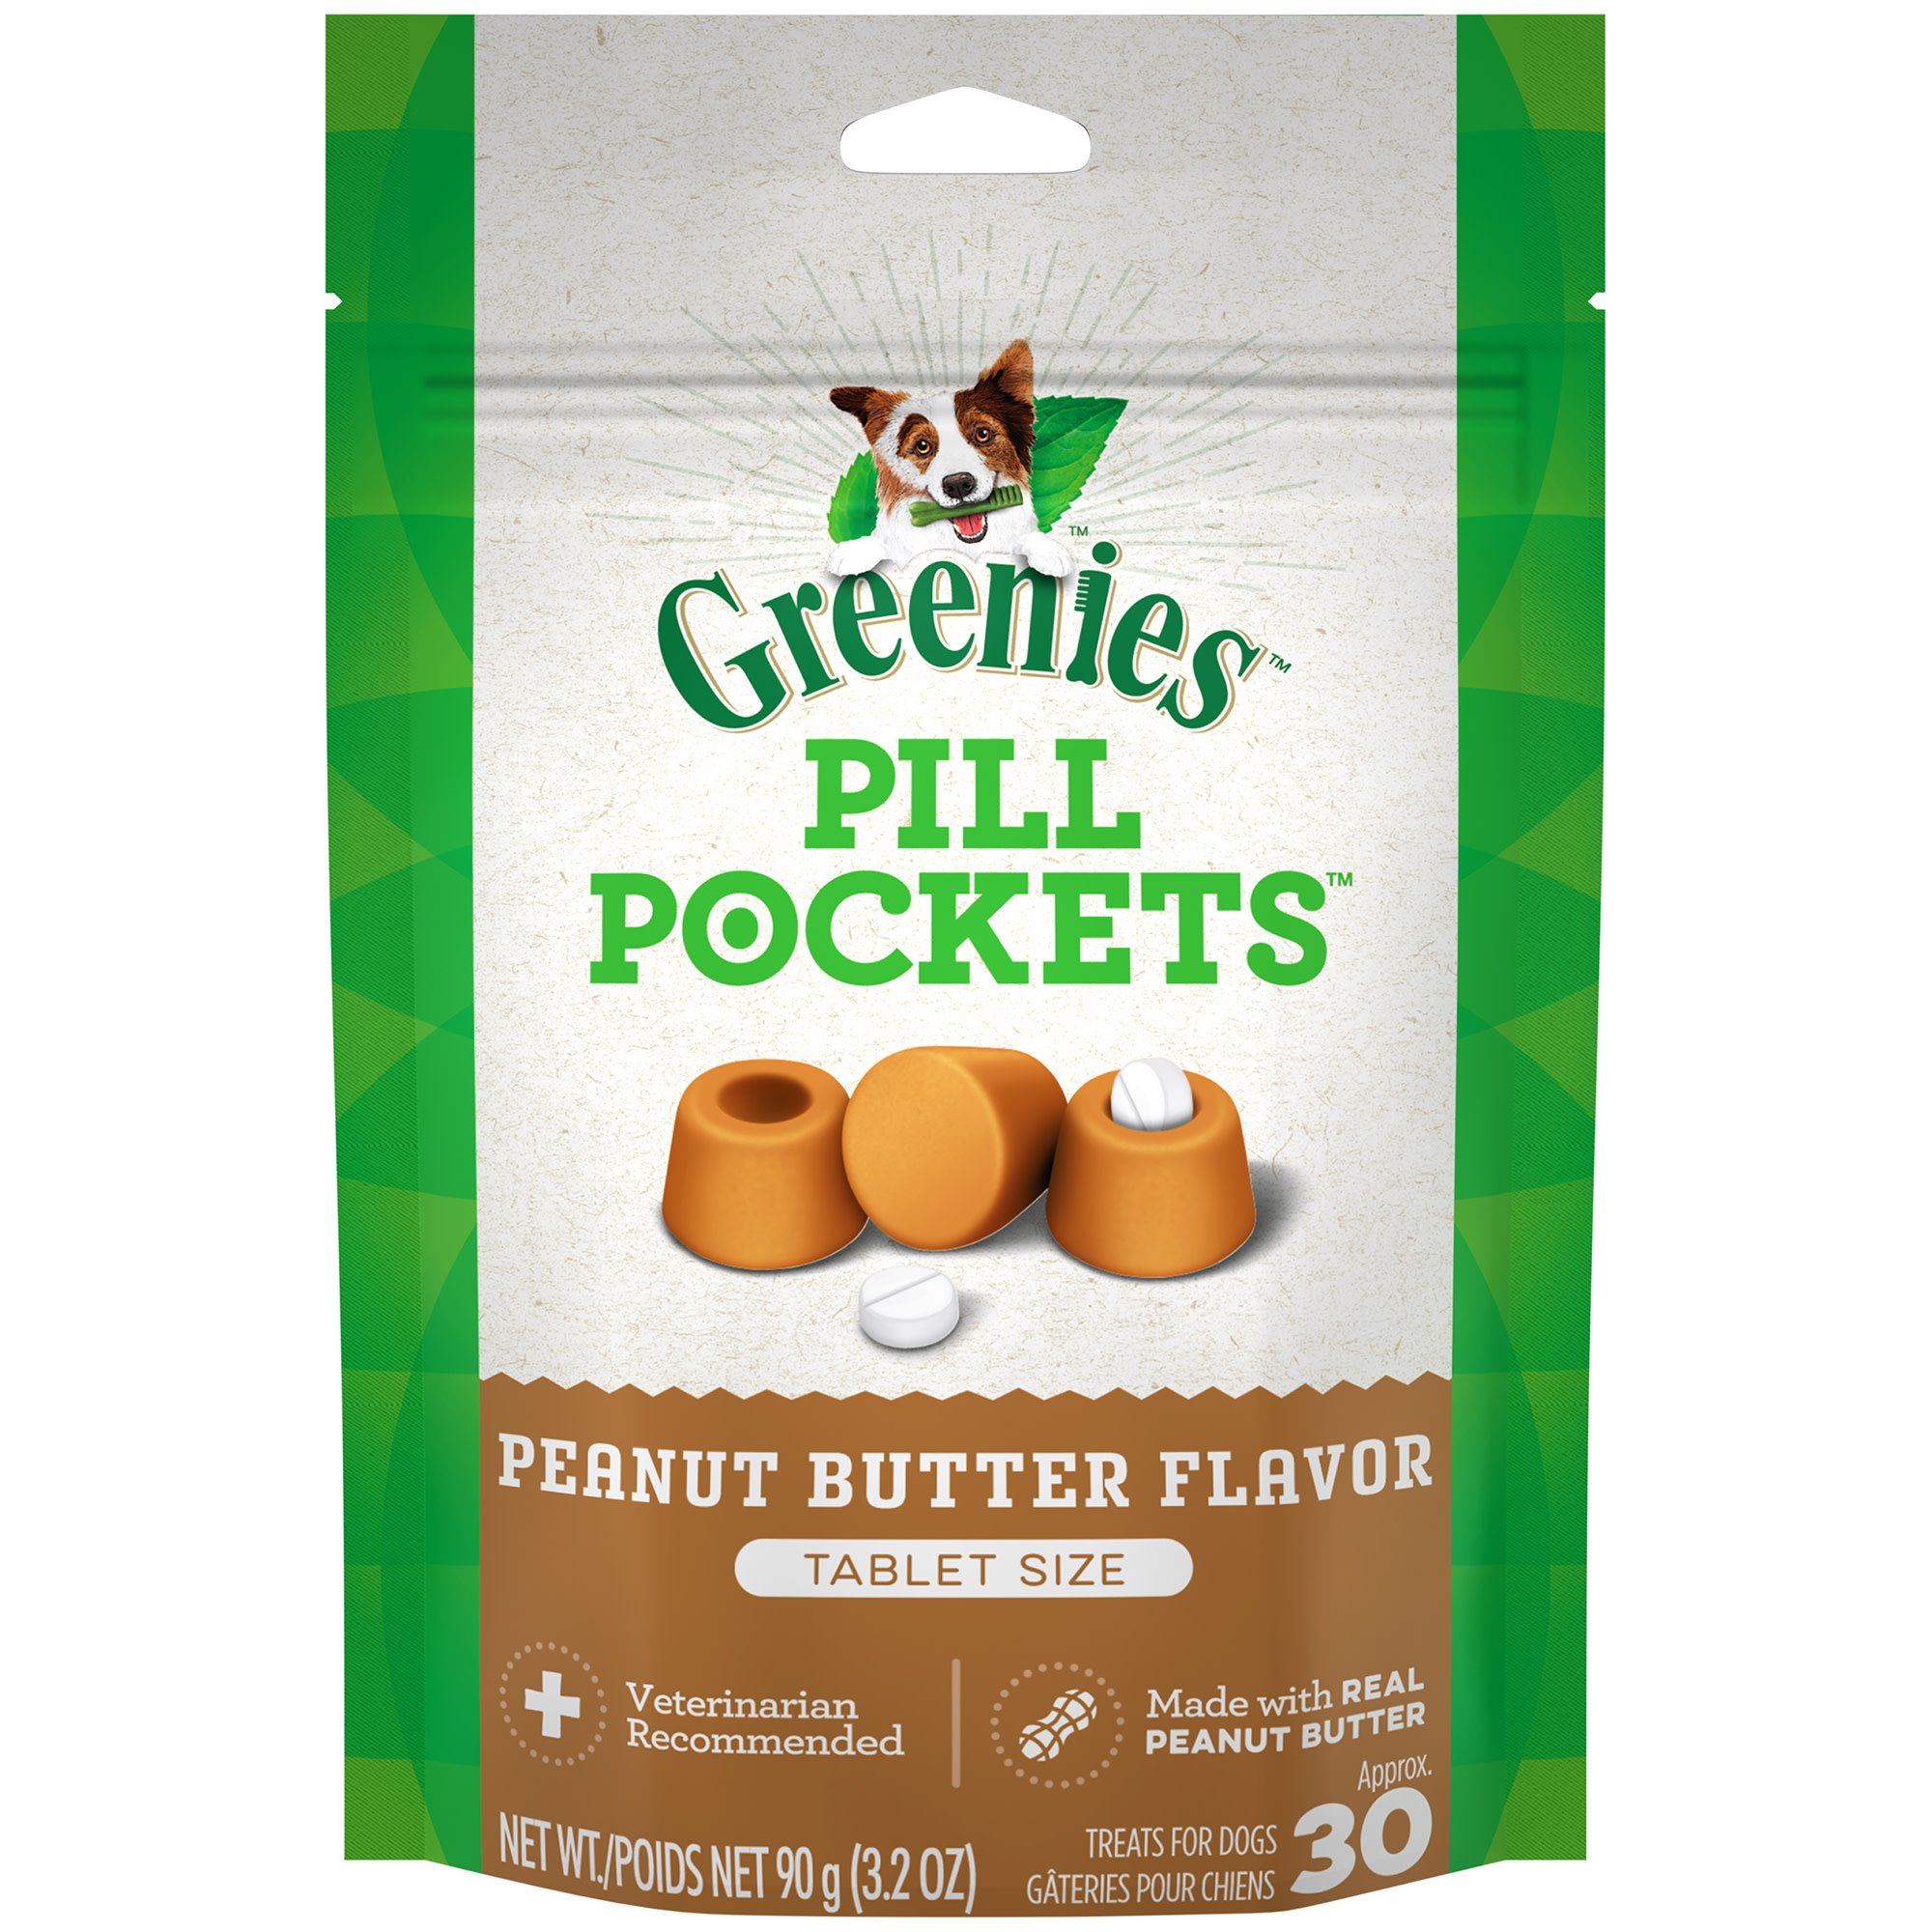 Greenies Pill Pockets Peanut Butter Tablets Dog Treats Petco